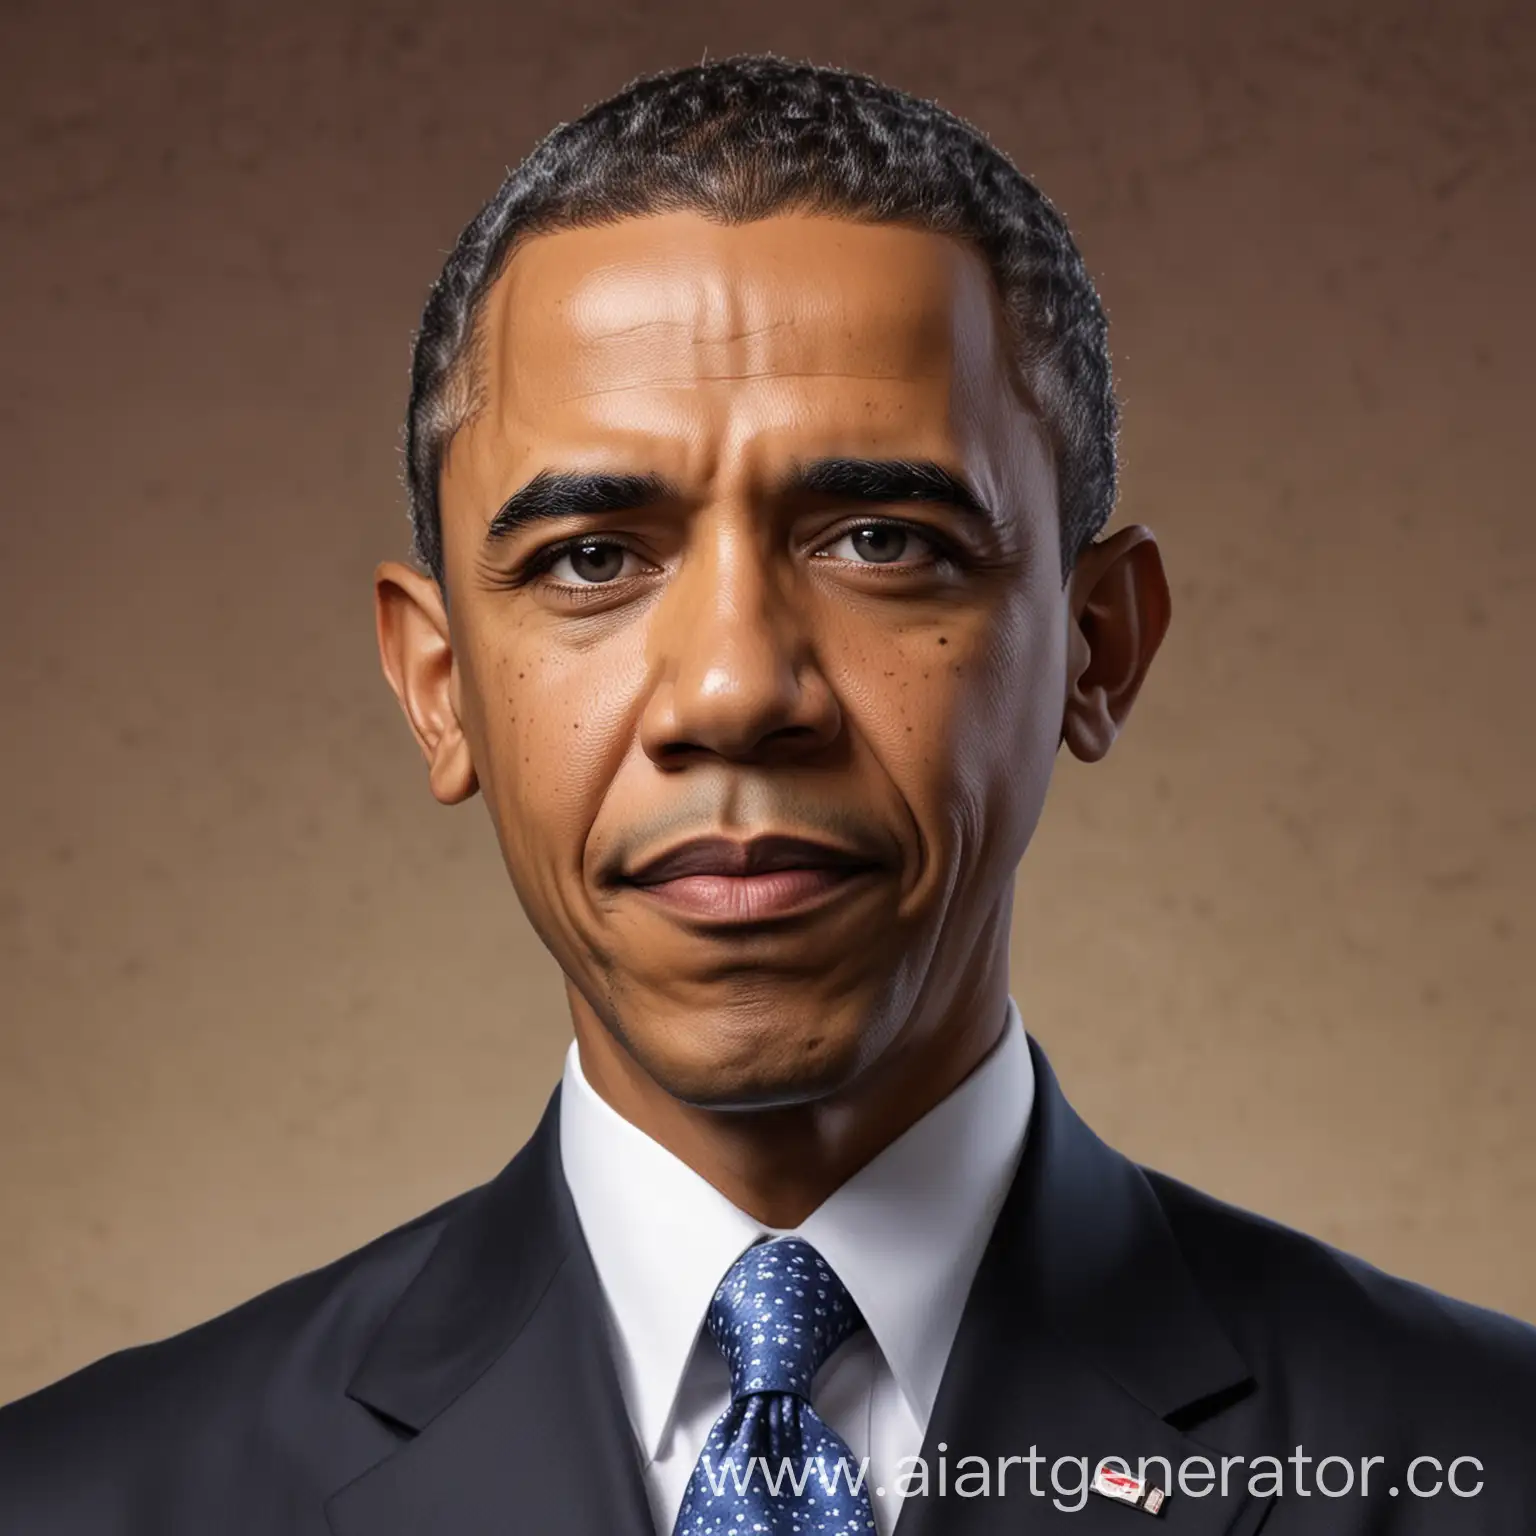 Barack-Obama-JoJo-Style-Portrait